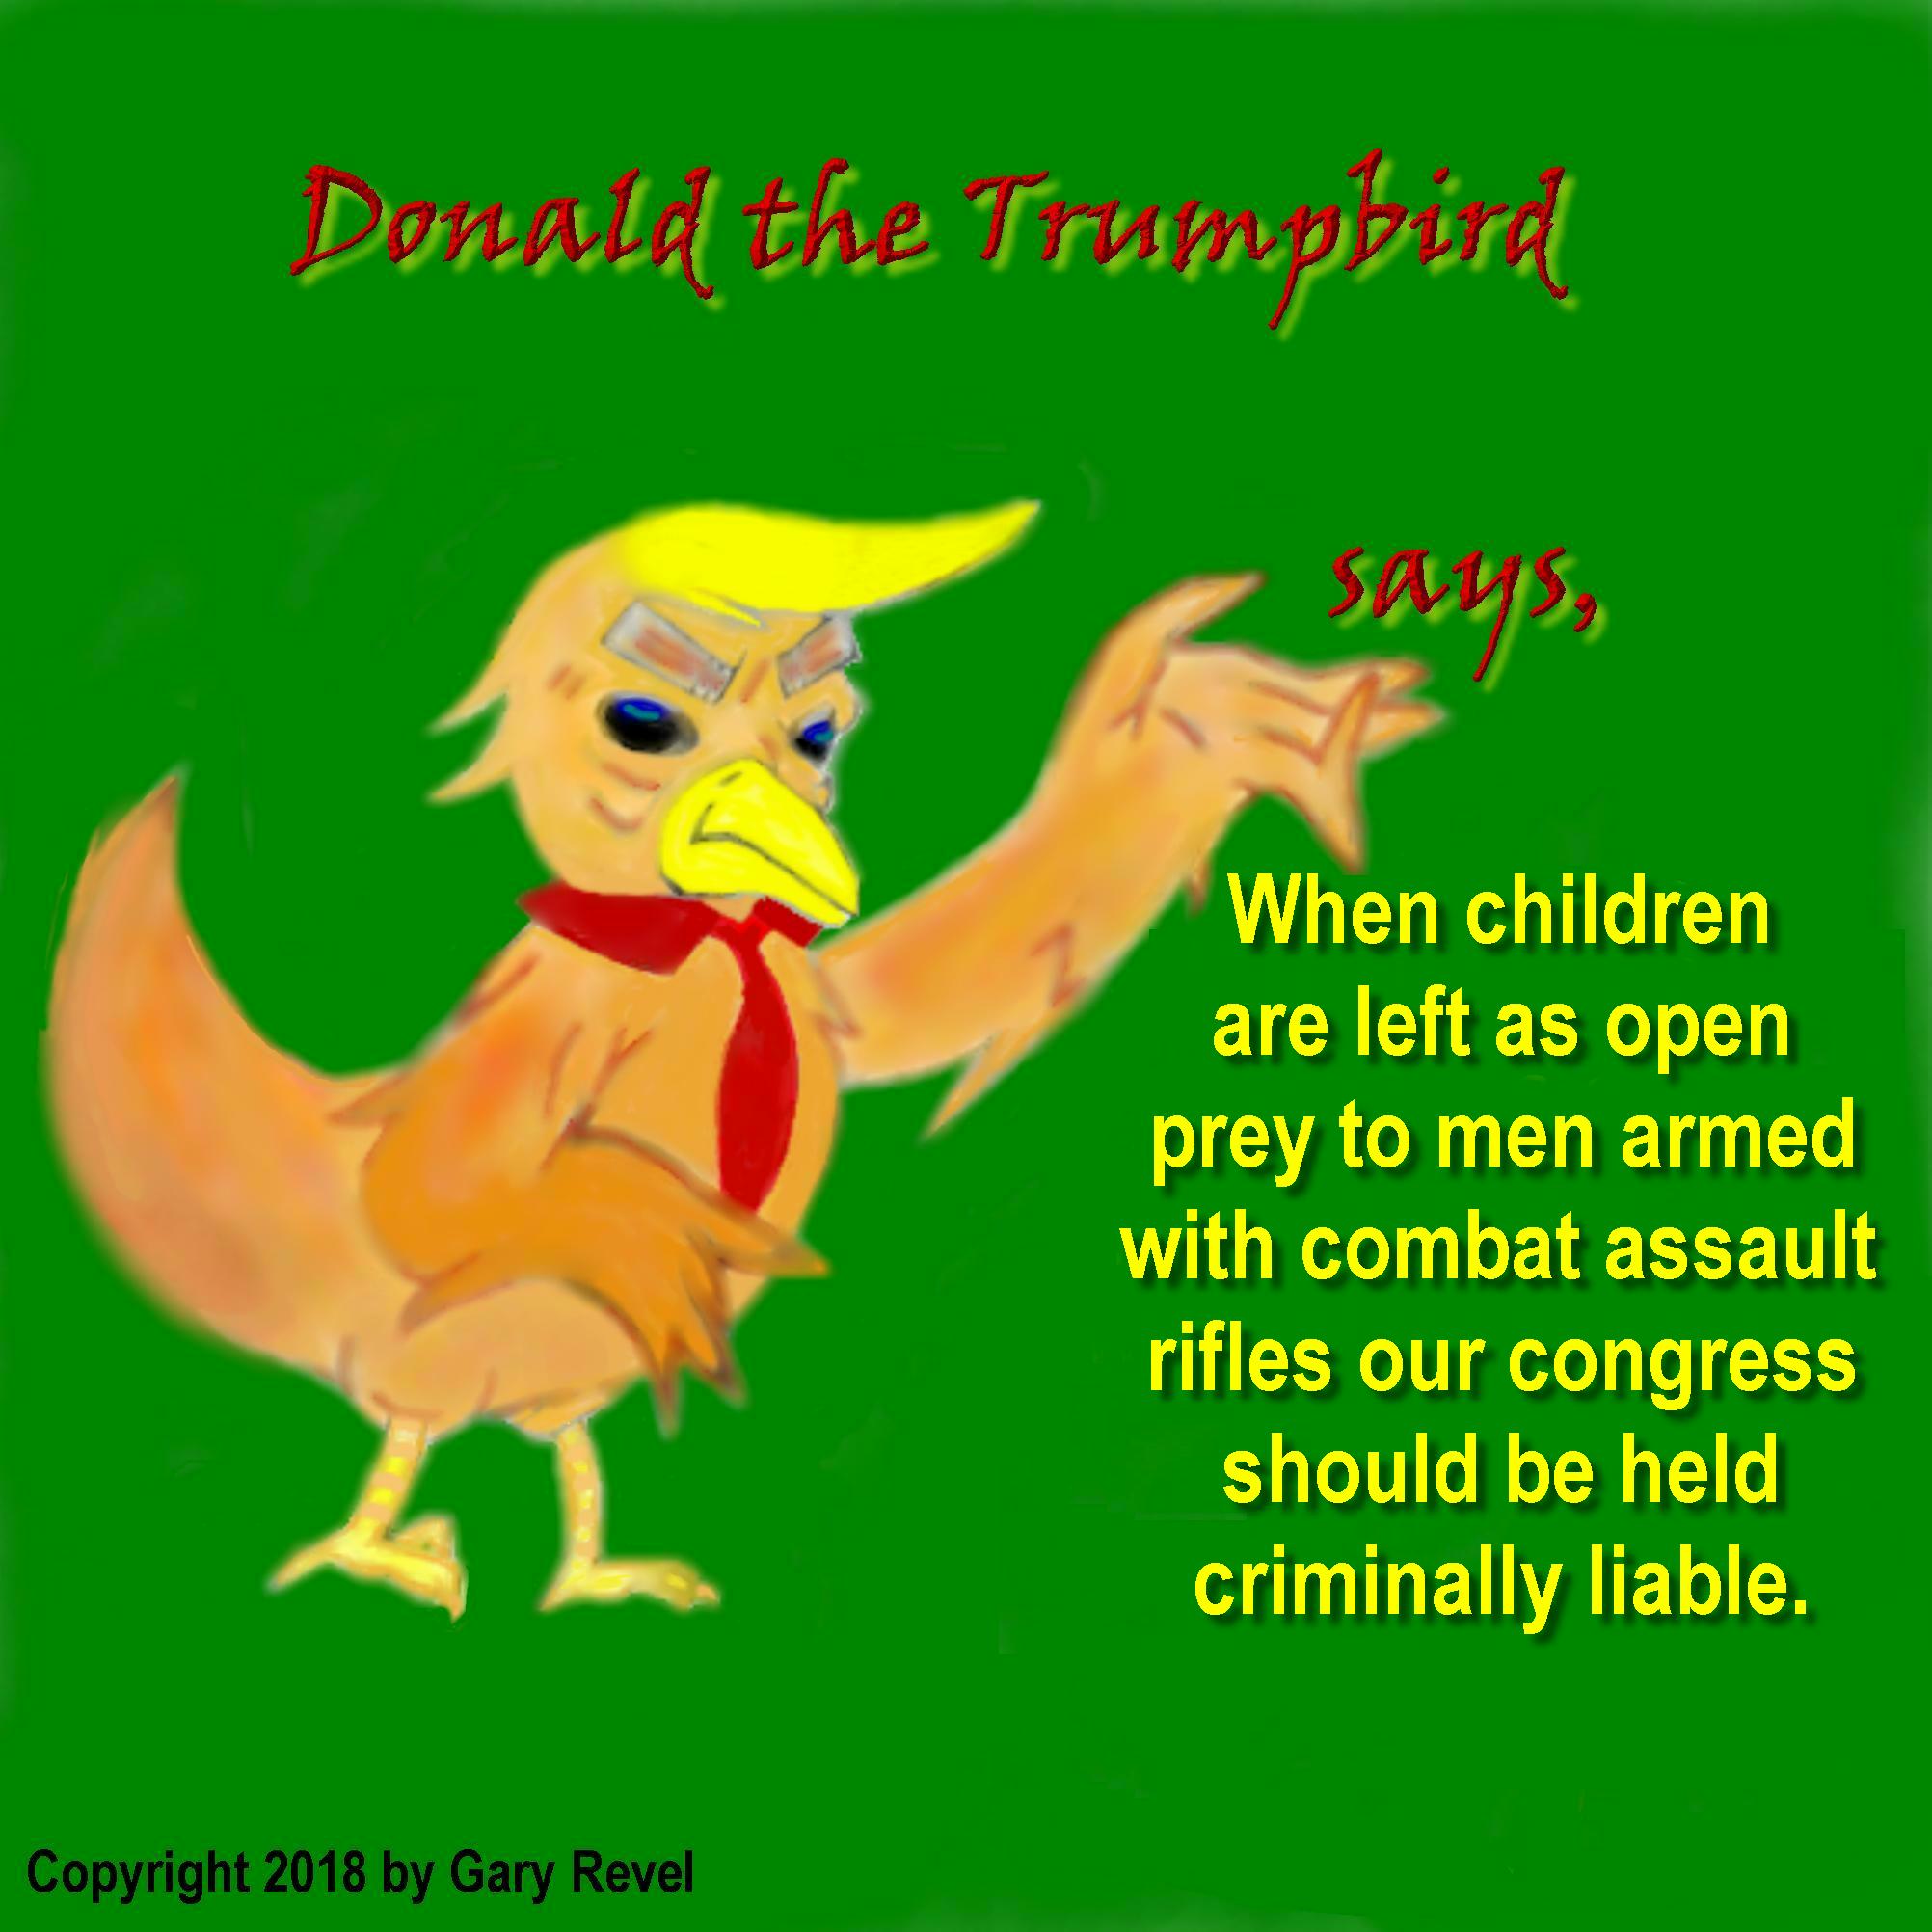 Donald the Trumpbird says children